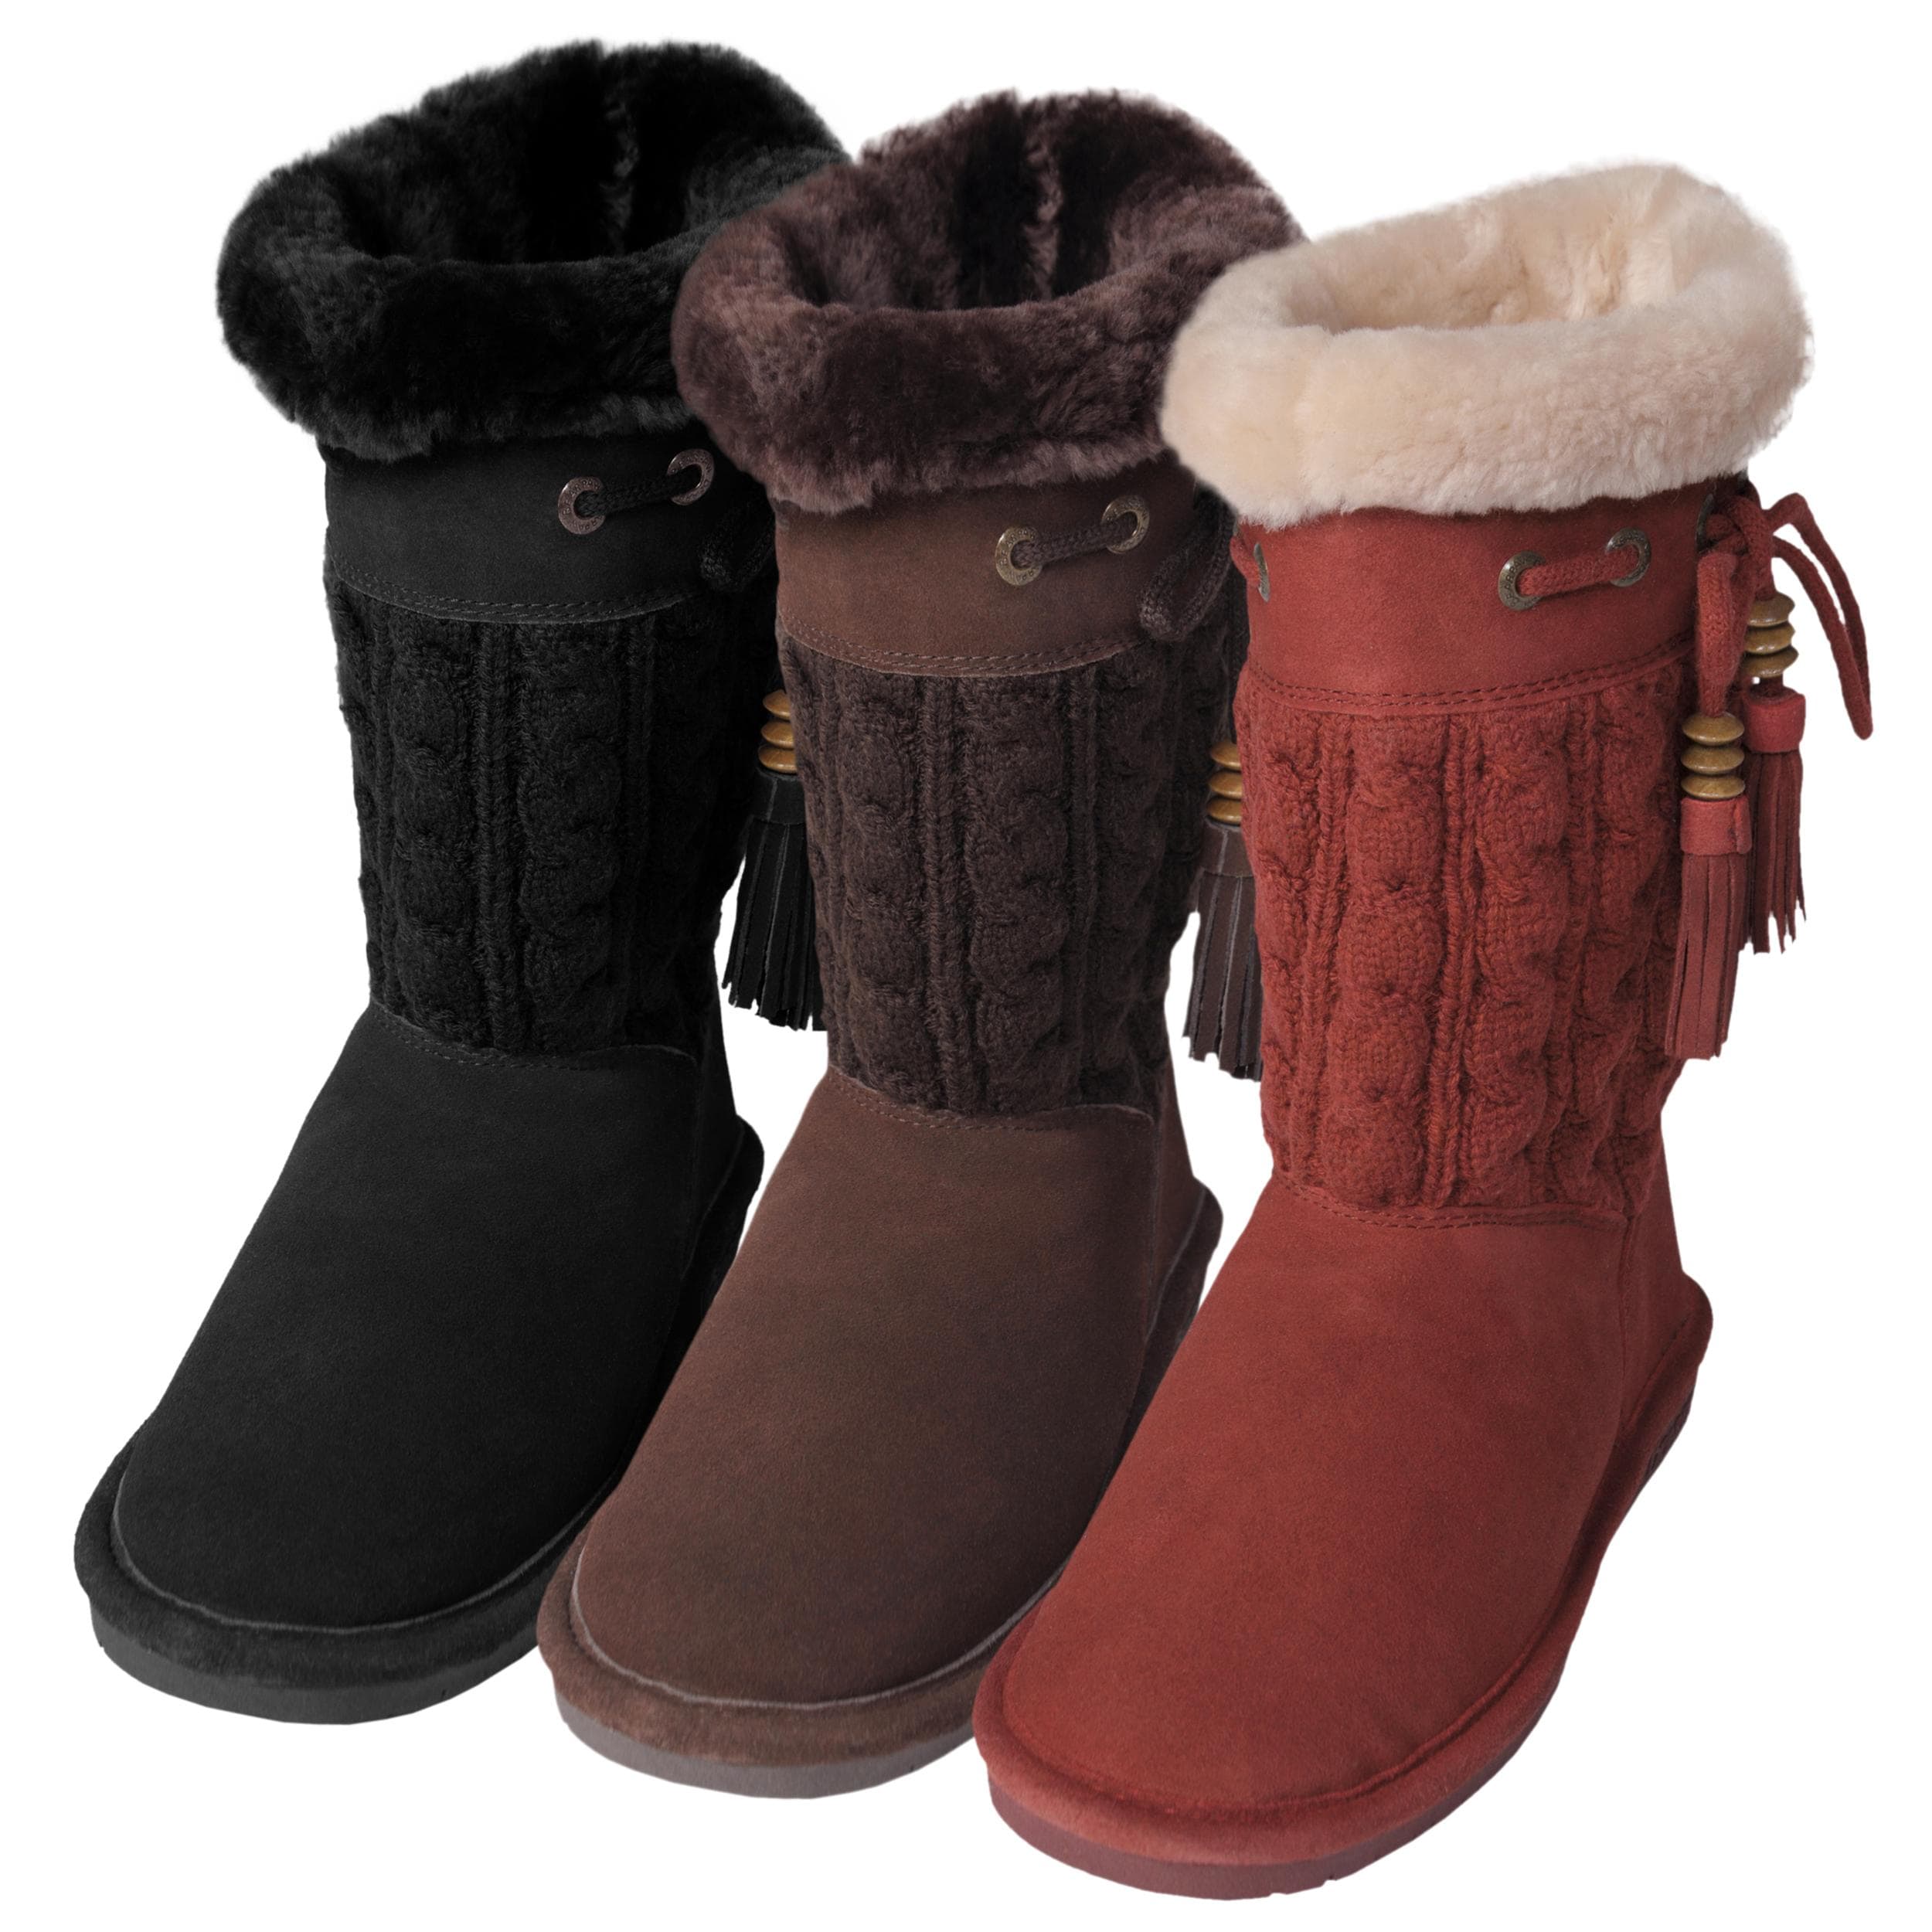 Bearpaw Women's 'Constantine' Suede/Knit Sheepskin-lined Boots - Free ...